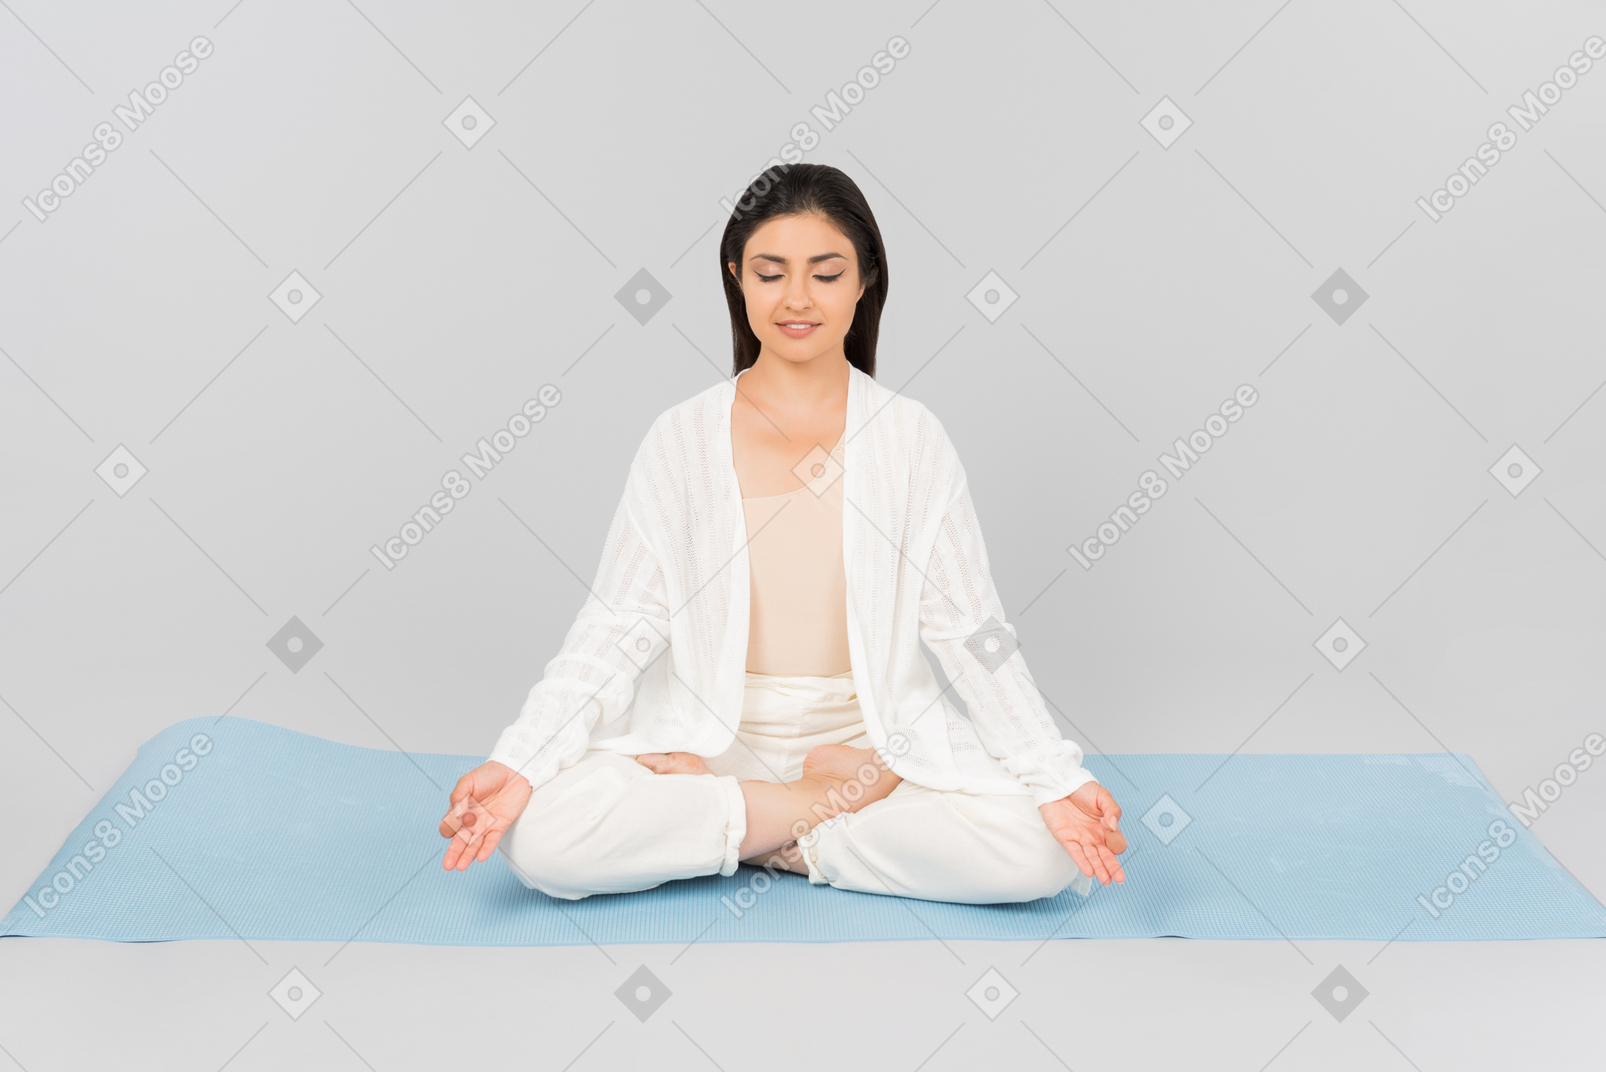 Indiana mulher sentada com as pernas cruzadas no tapete de ioga